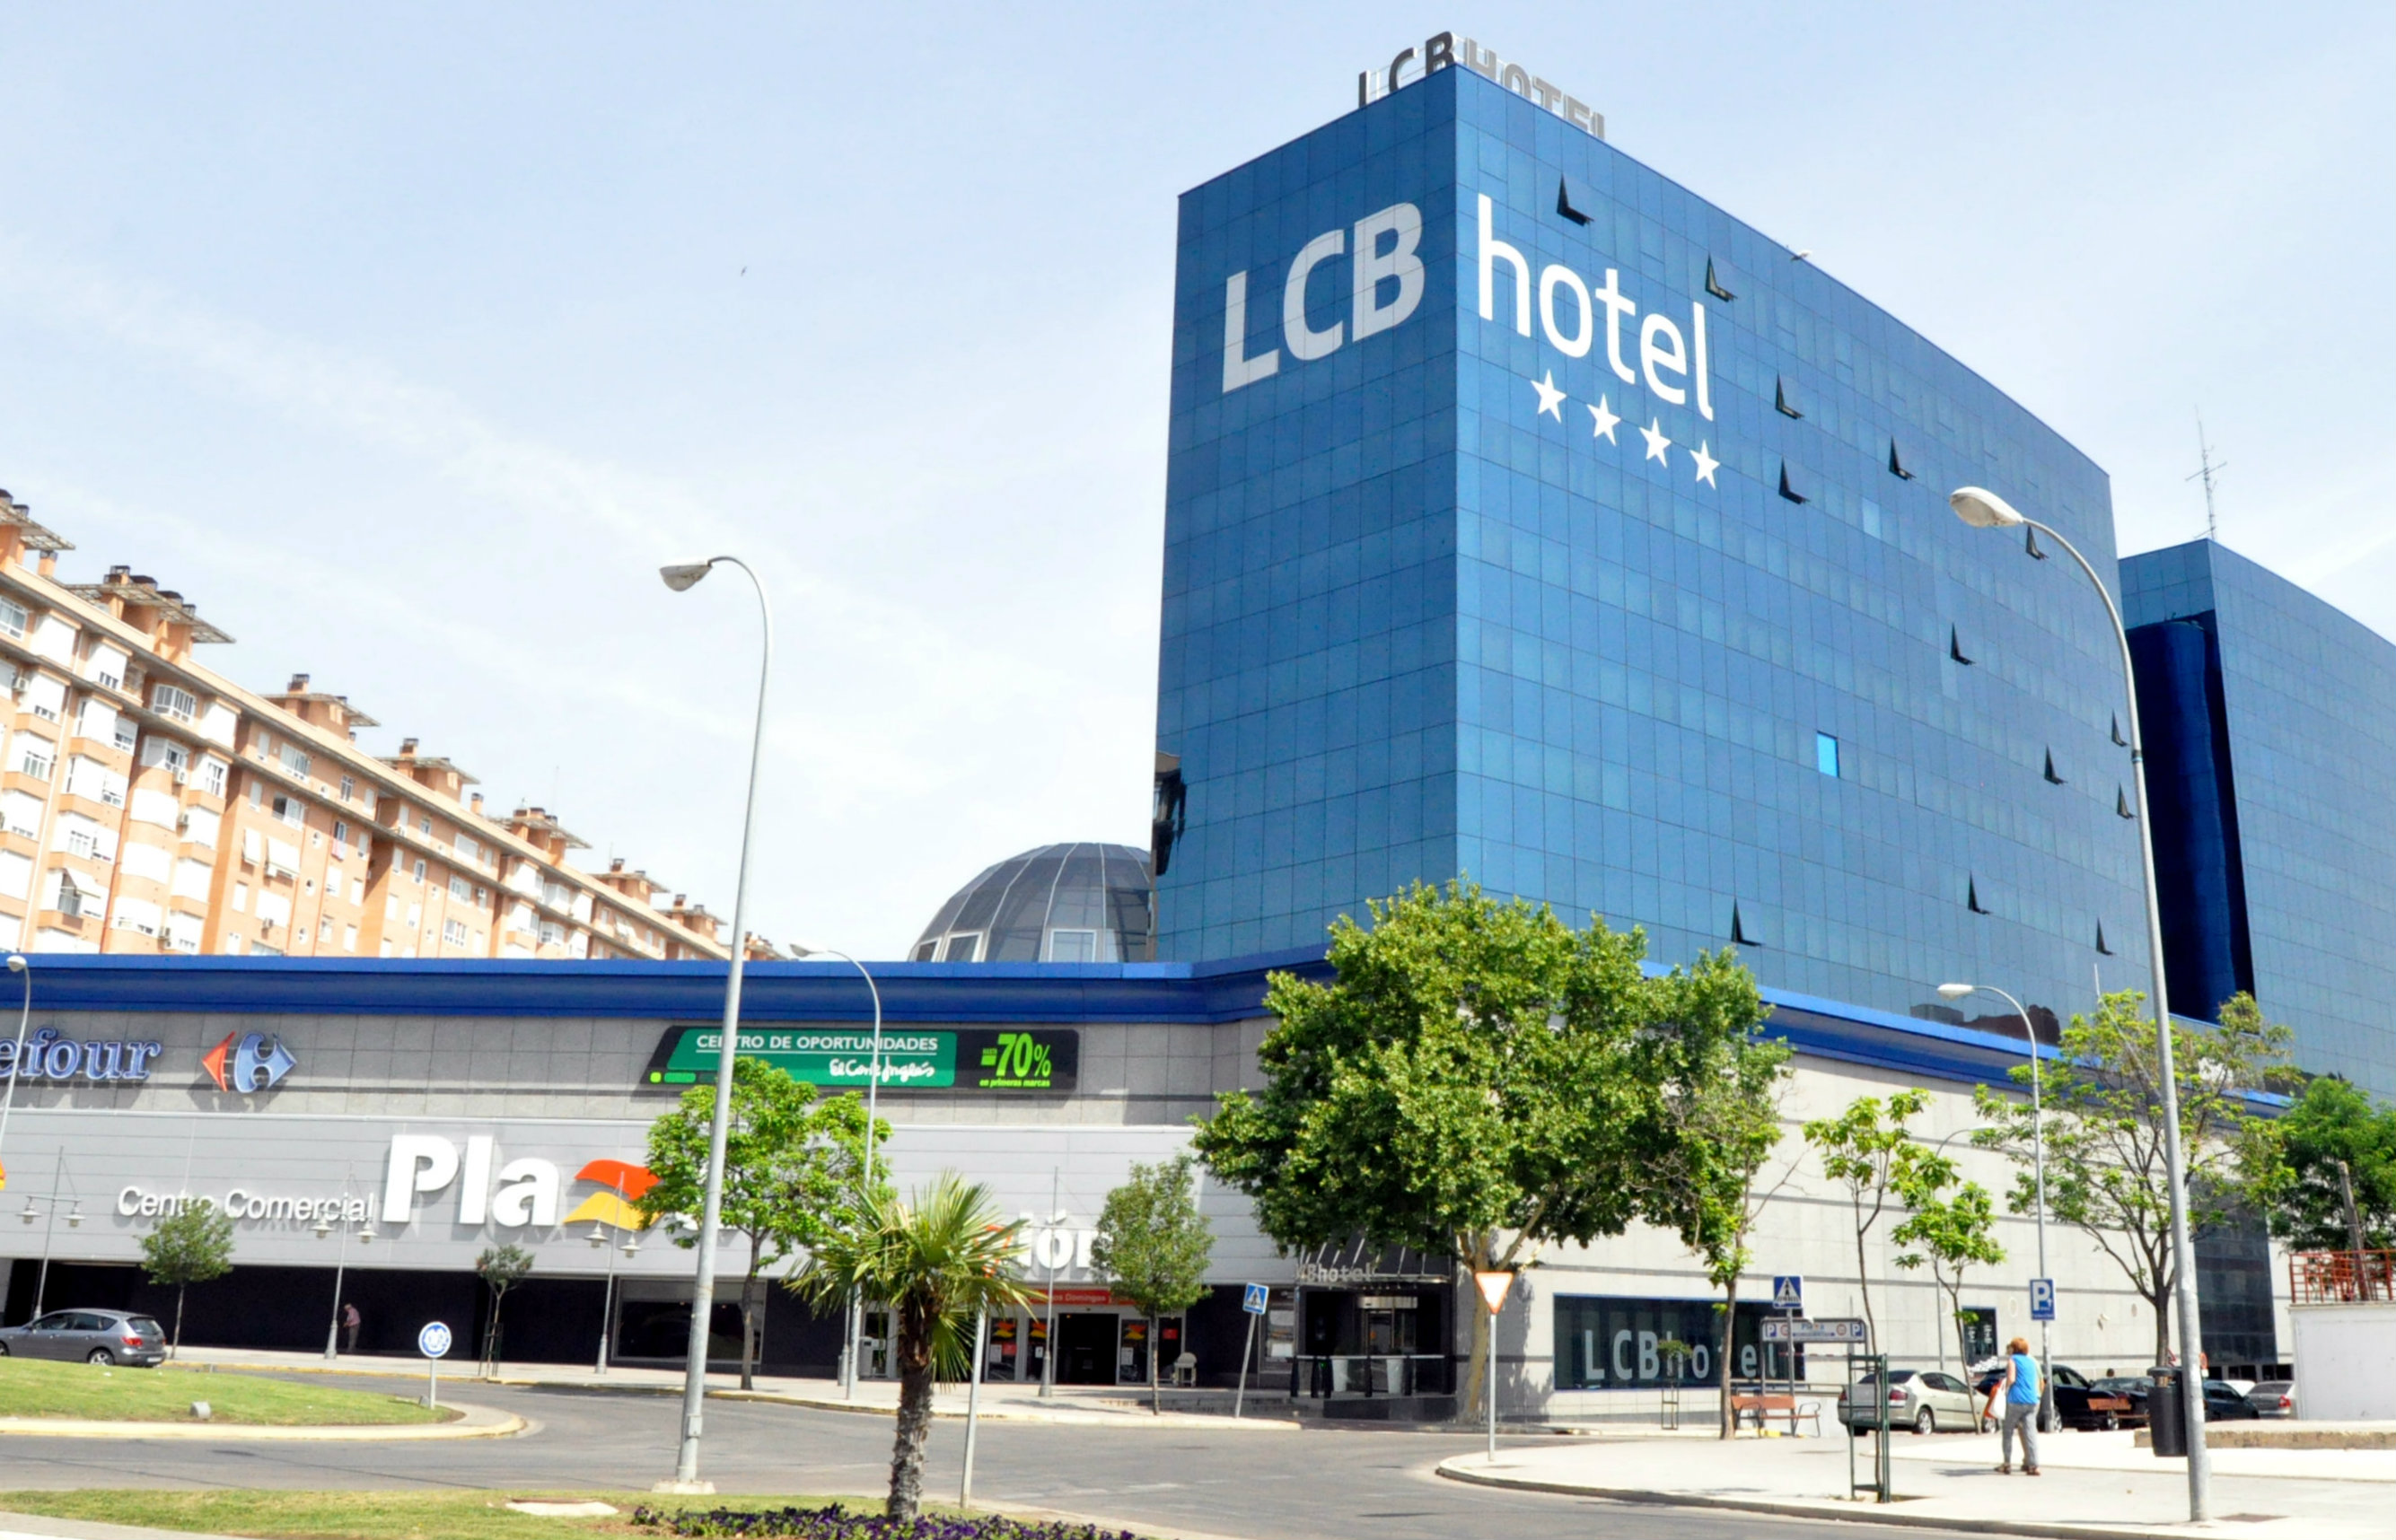 LCB Hotel Fuenlabrada image